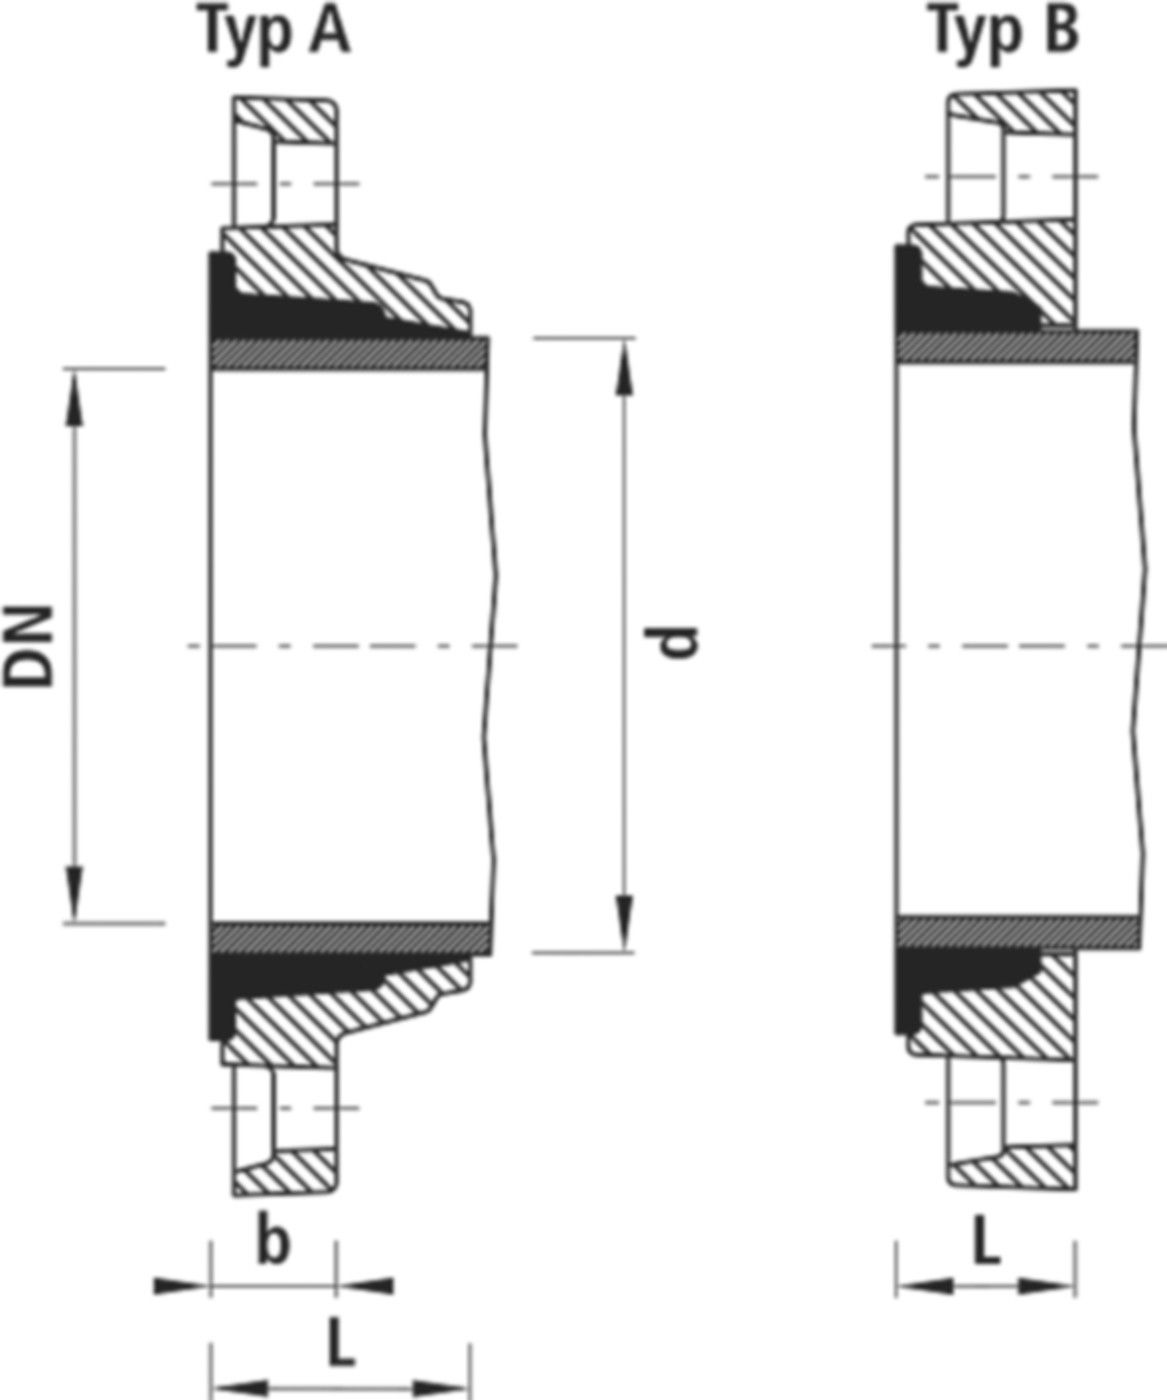 Zweikammer-Flansch für Stahlrohre 7130 PN 10/16 DN 50 / AD 56mm - Hawle Flanschformstücke